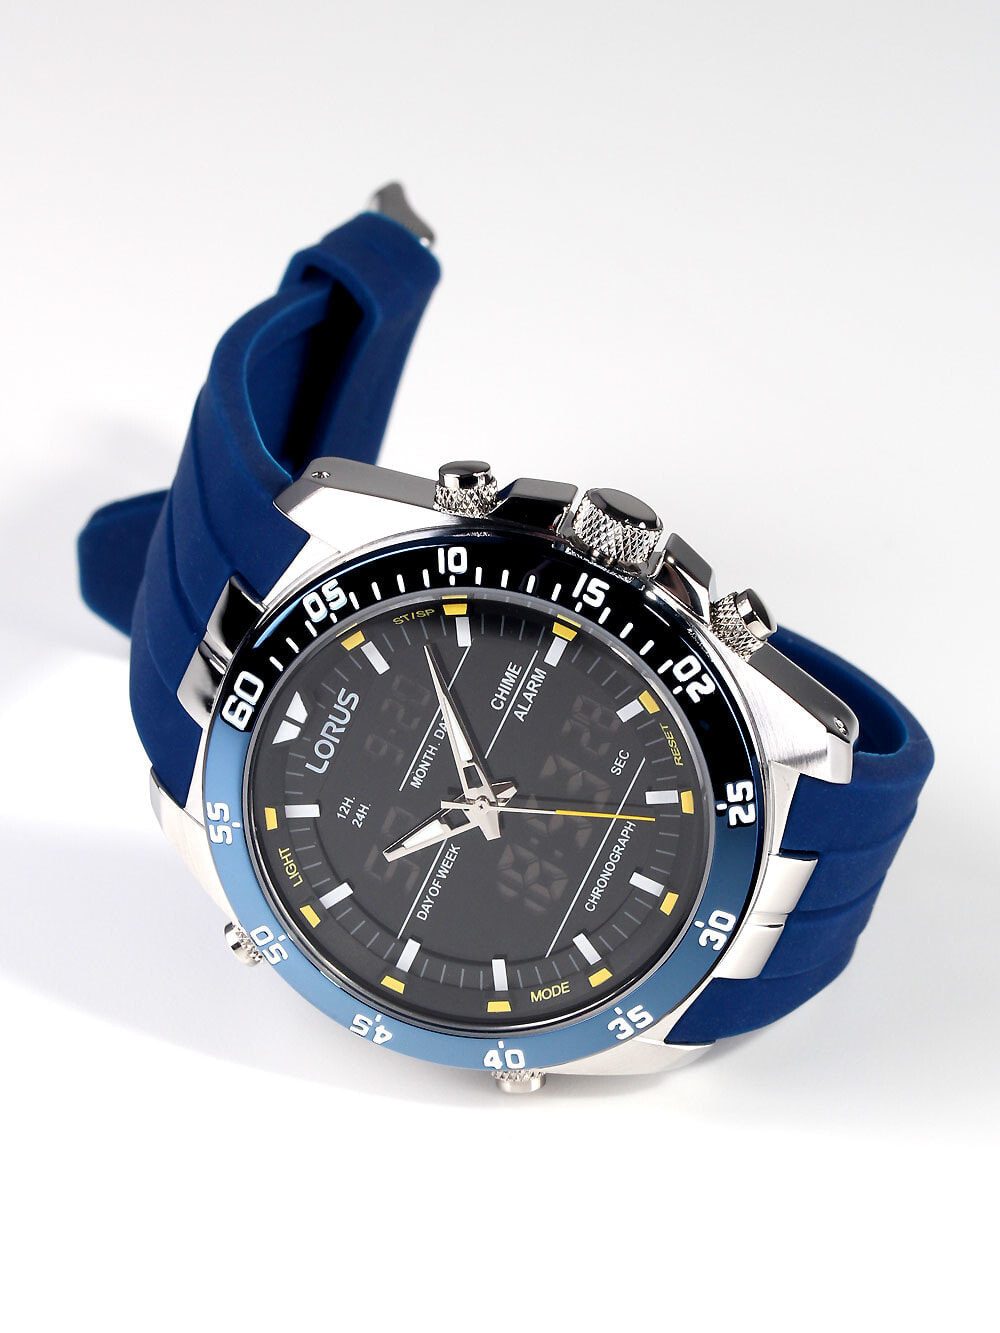 Мужские наручные часы с синим силиконовым ремешком Lorus RW617AX9  Analog-Digital Alarm Chronograph 100M 46mm — купить недорого с доставкой,  6761219